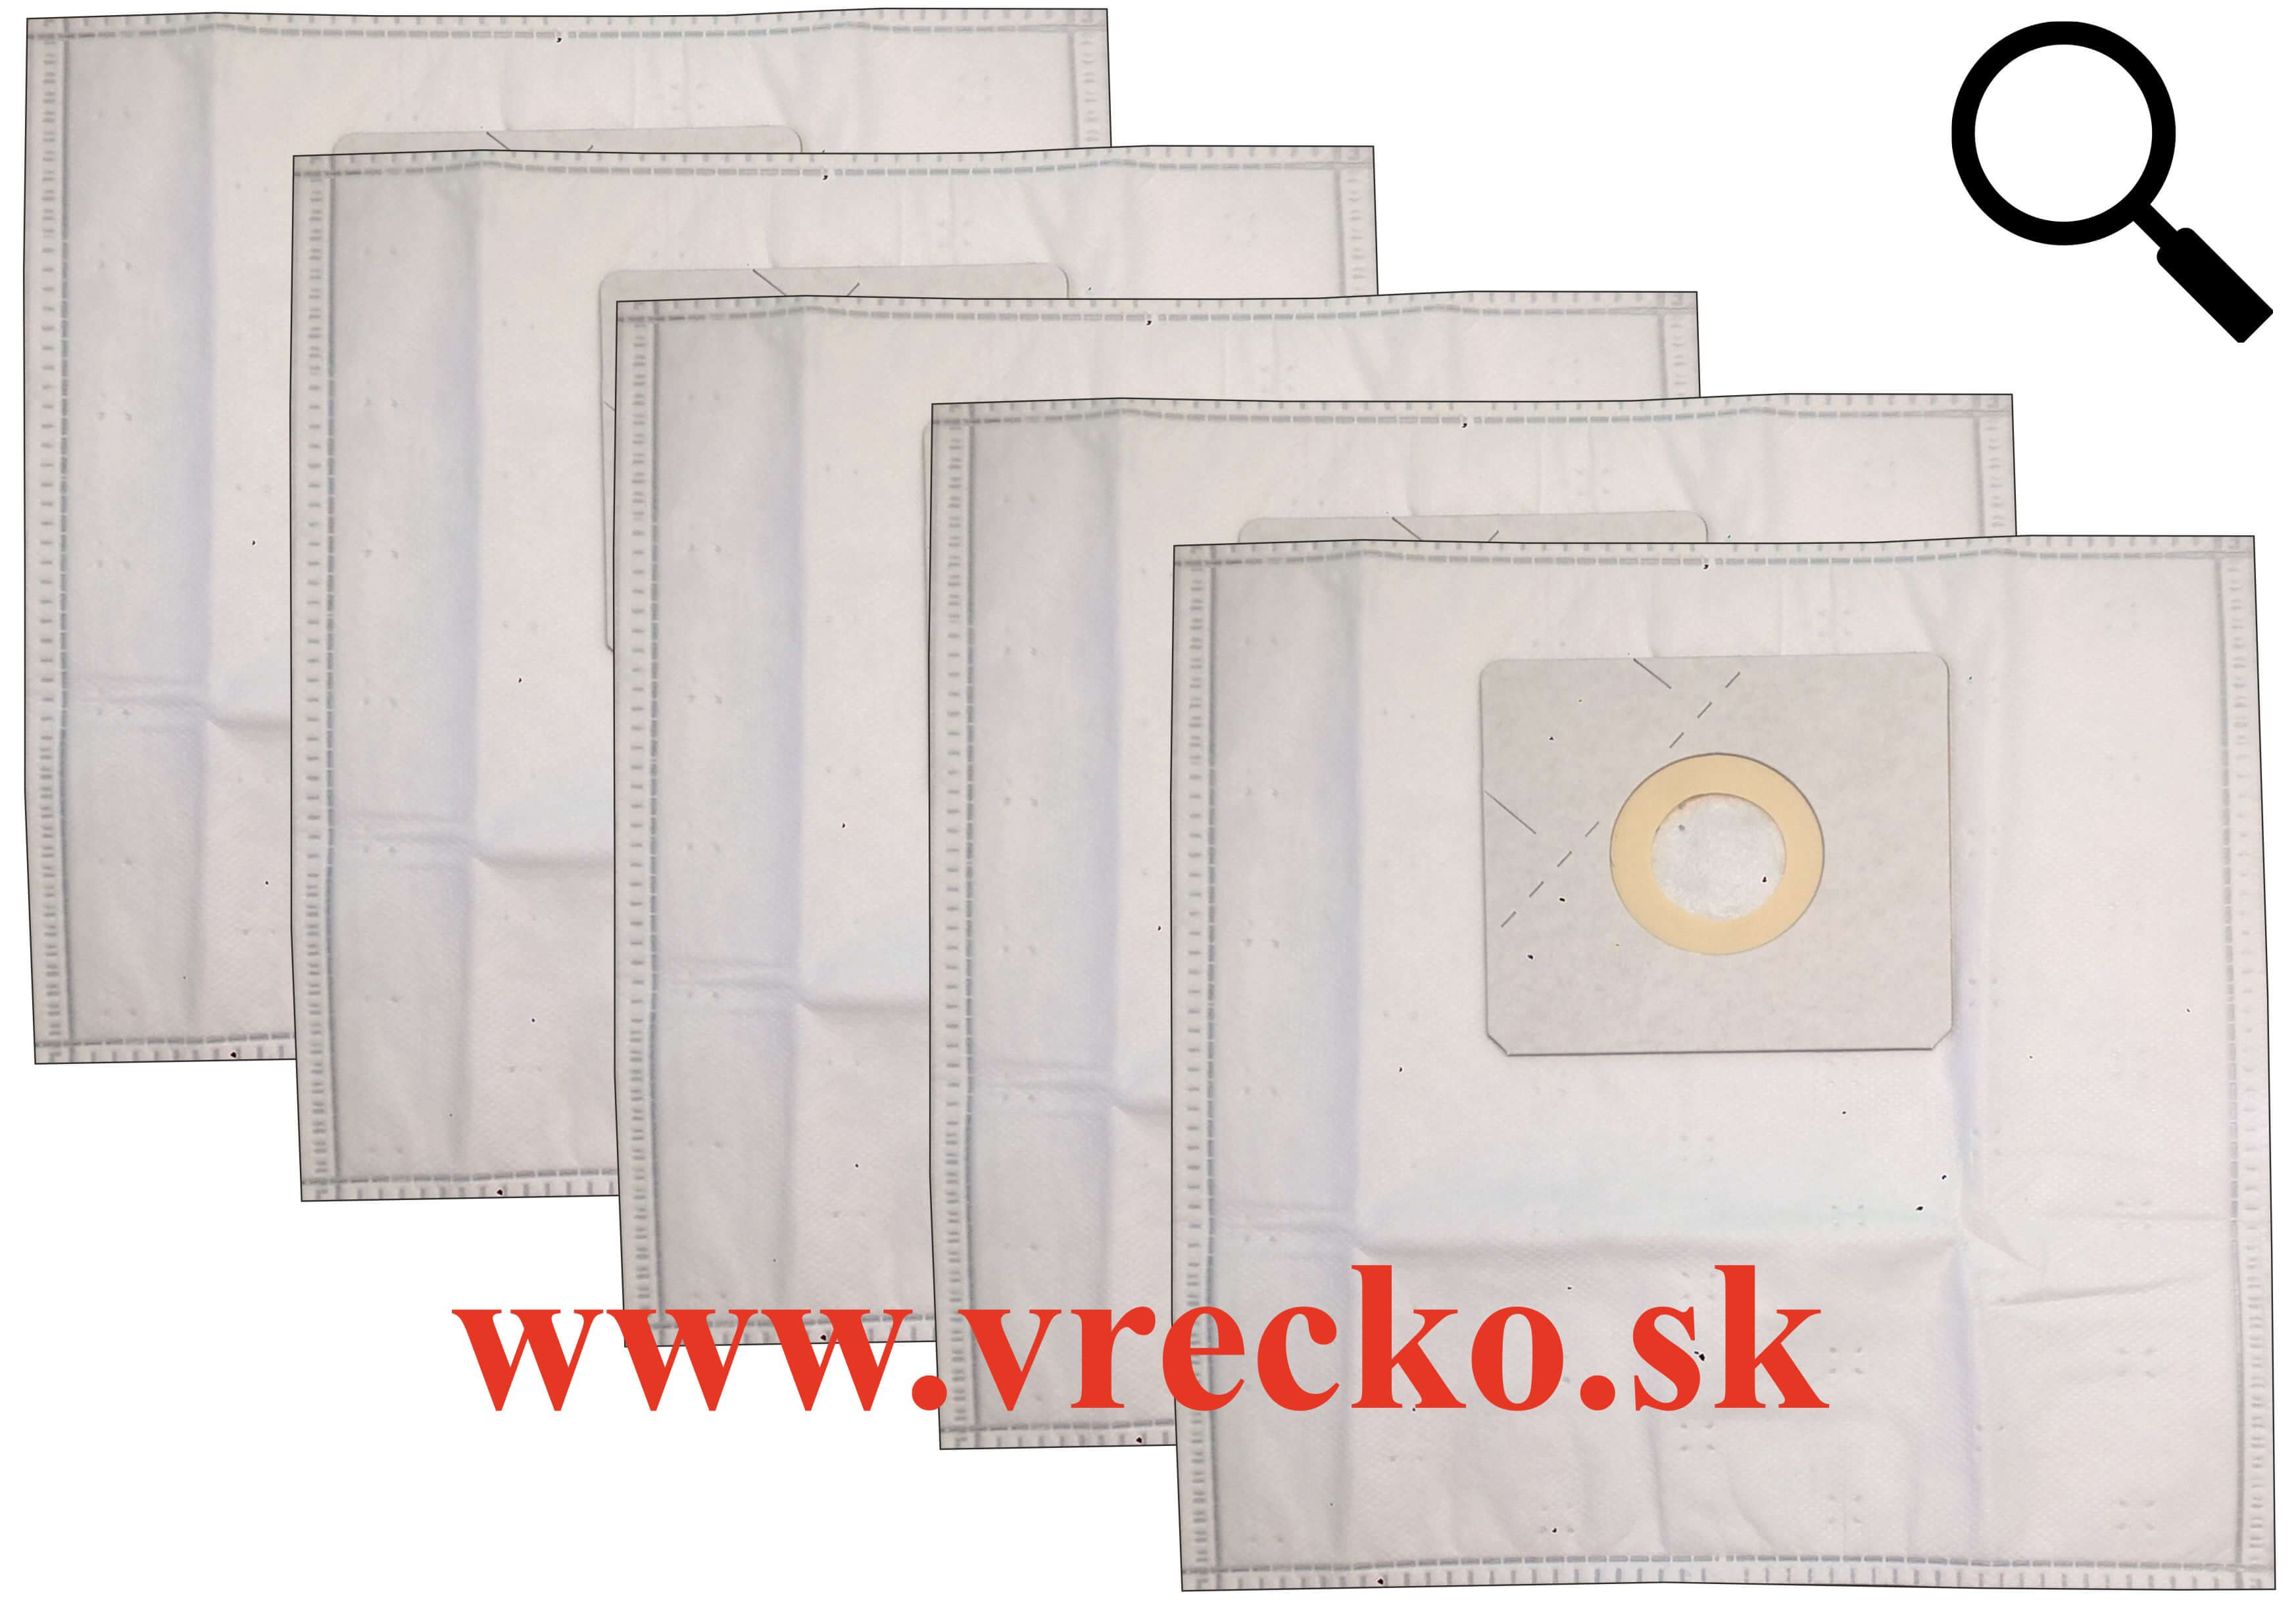 Tesco VC 010 textilné vrecká do vysávača, 5ks